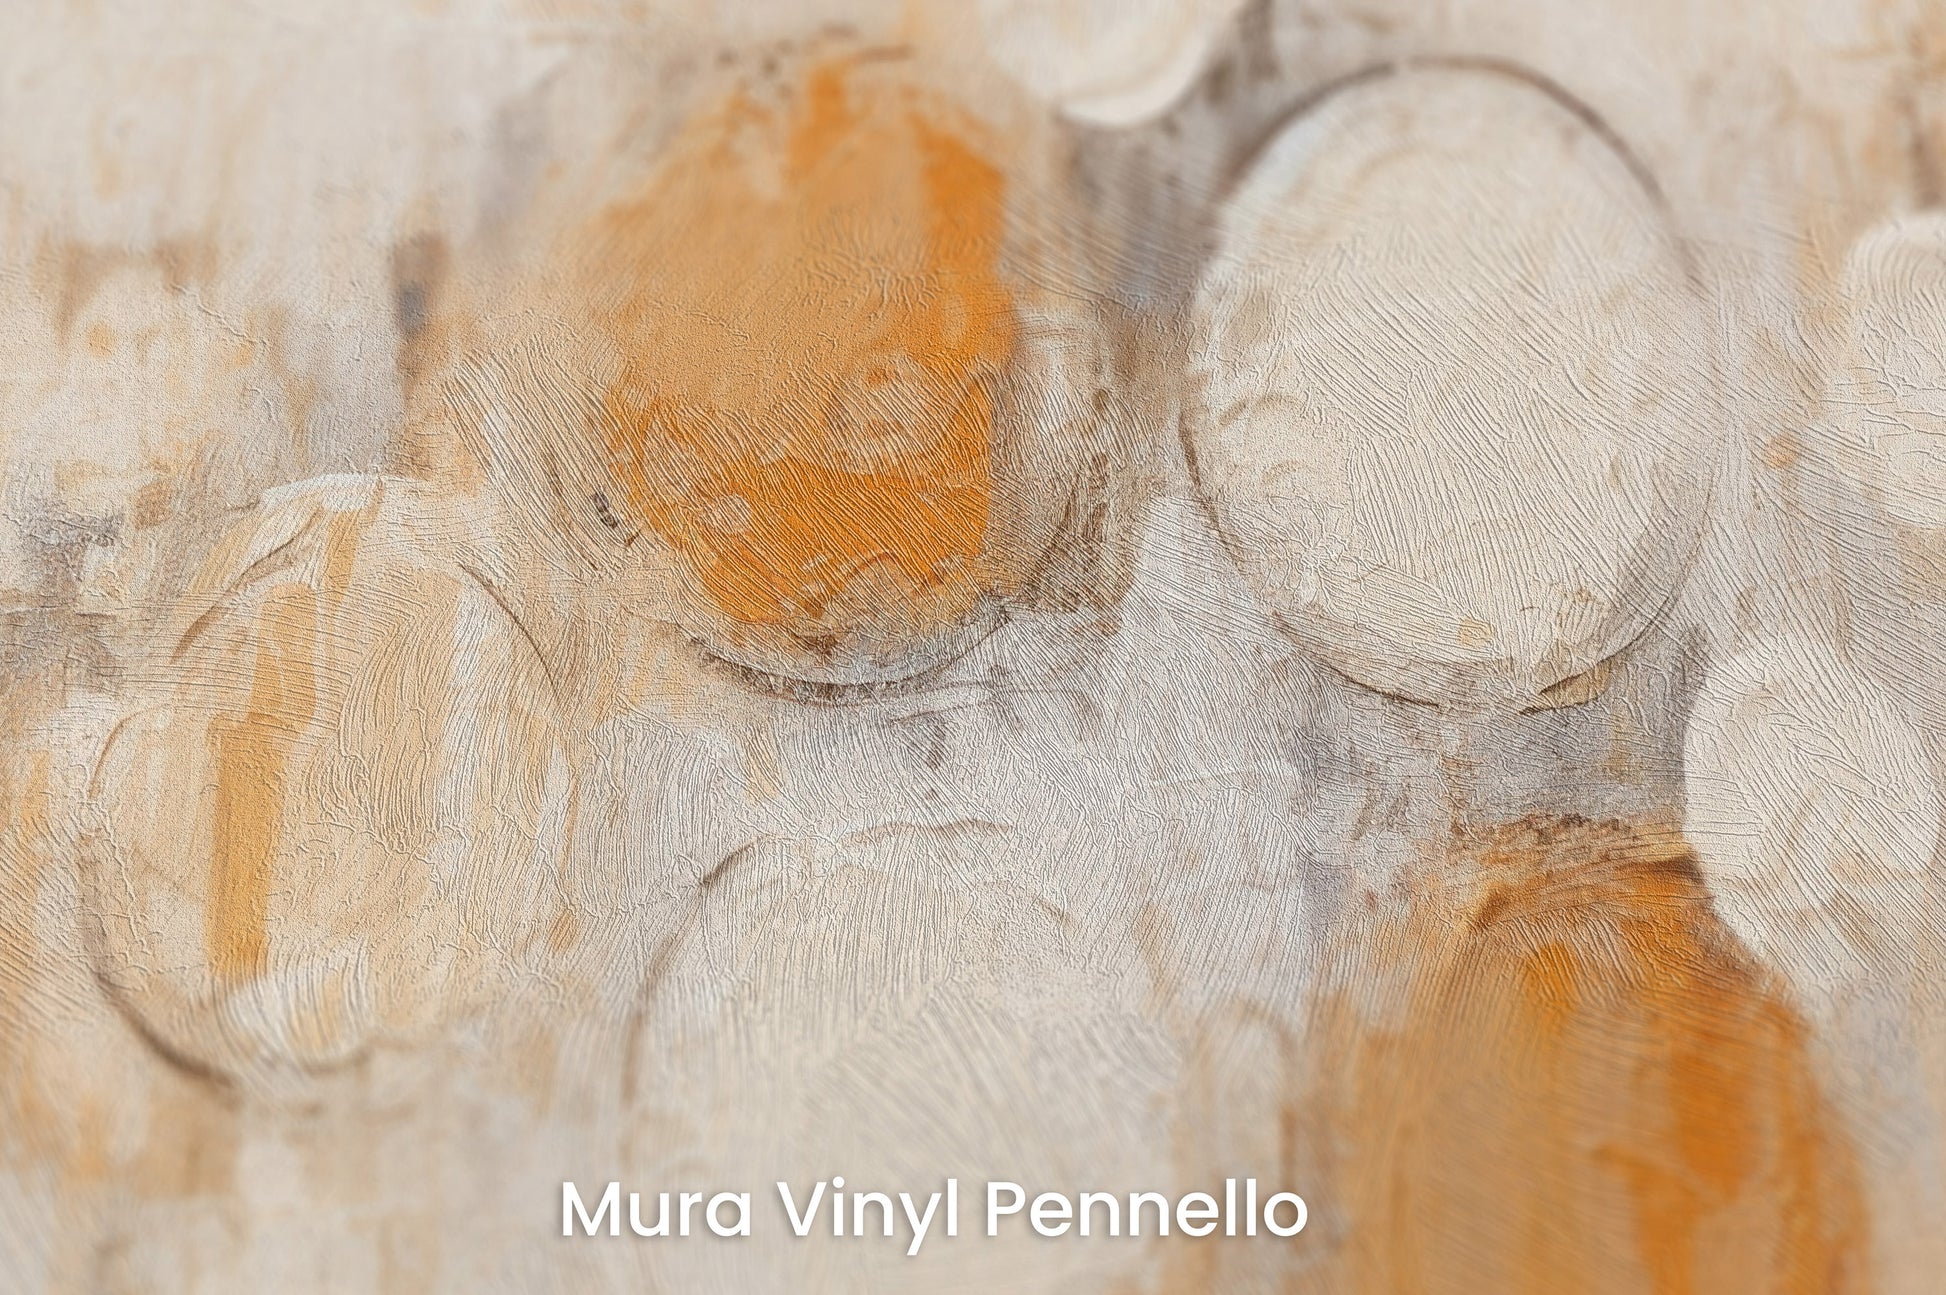 Zbliżenie na artystyczną fototapetę o nazwie AMBER AND IVORY SPHERICAL HARMONY na podłożu Mura Vinyl Pennello - faktura pociągnięć pędzla malarskiego.